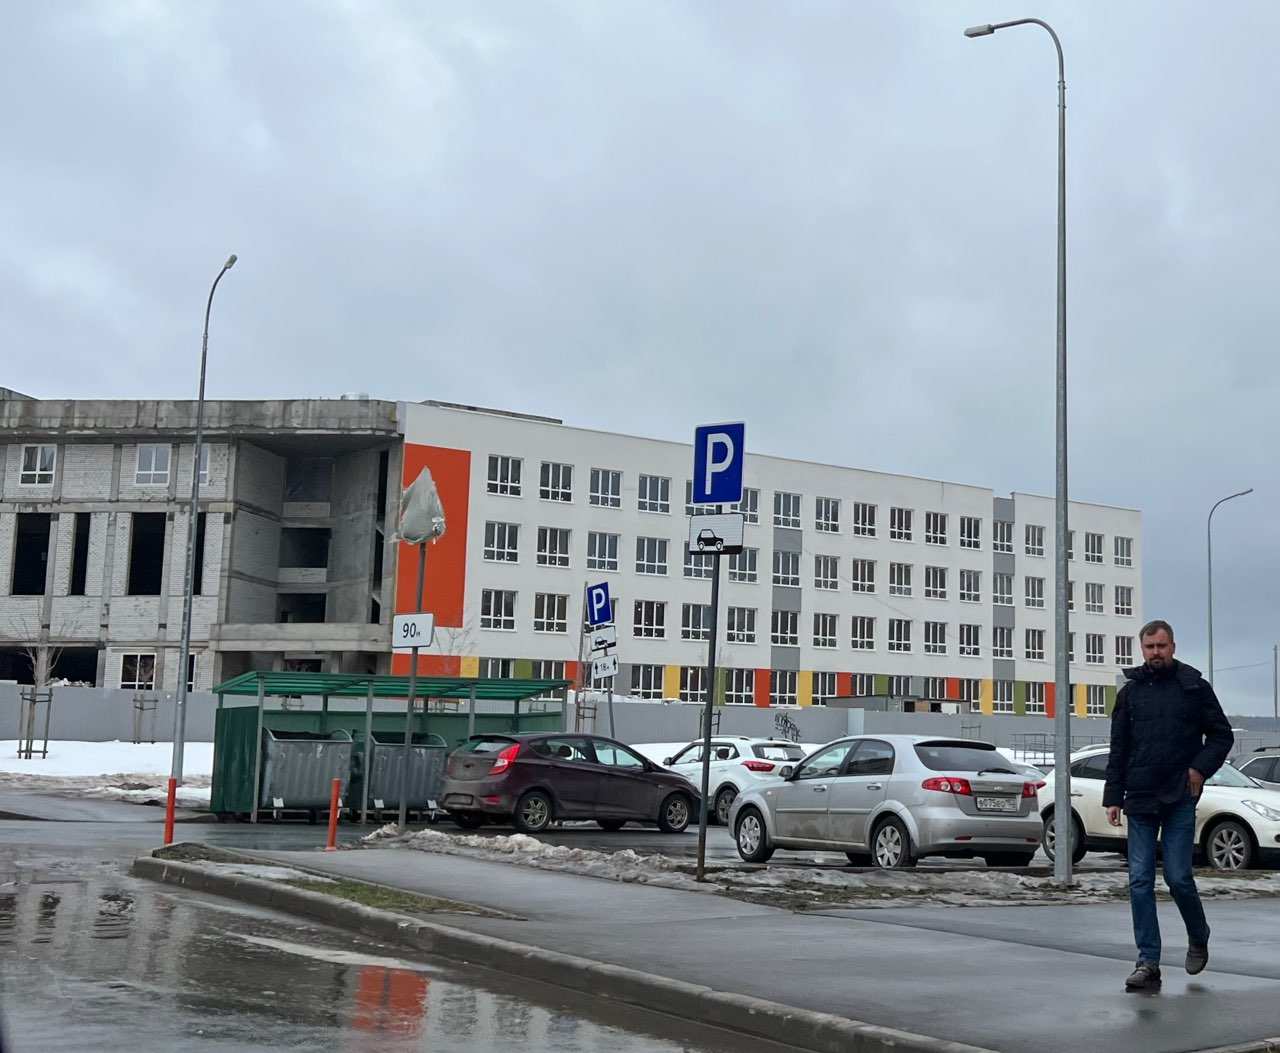 Госэкспертиза одобрила проект школы в Кузнечихе в Нижнем Новгороде  - фото 1